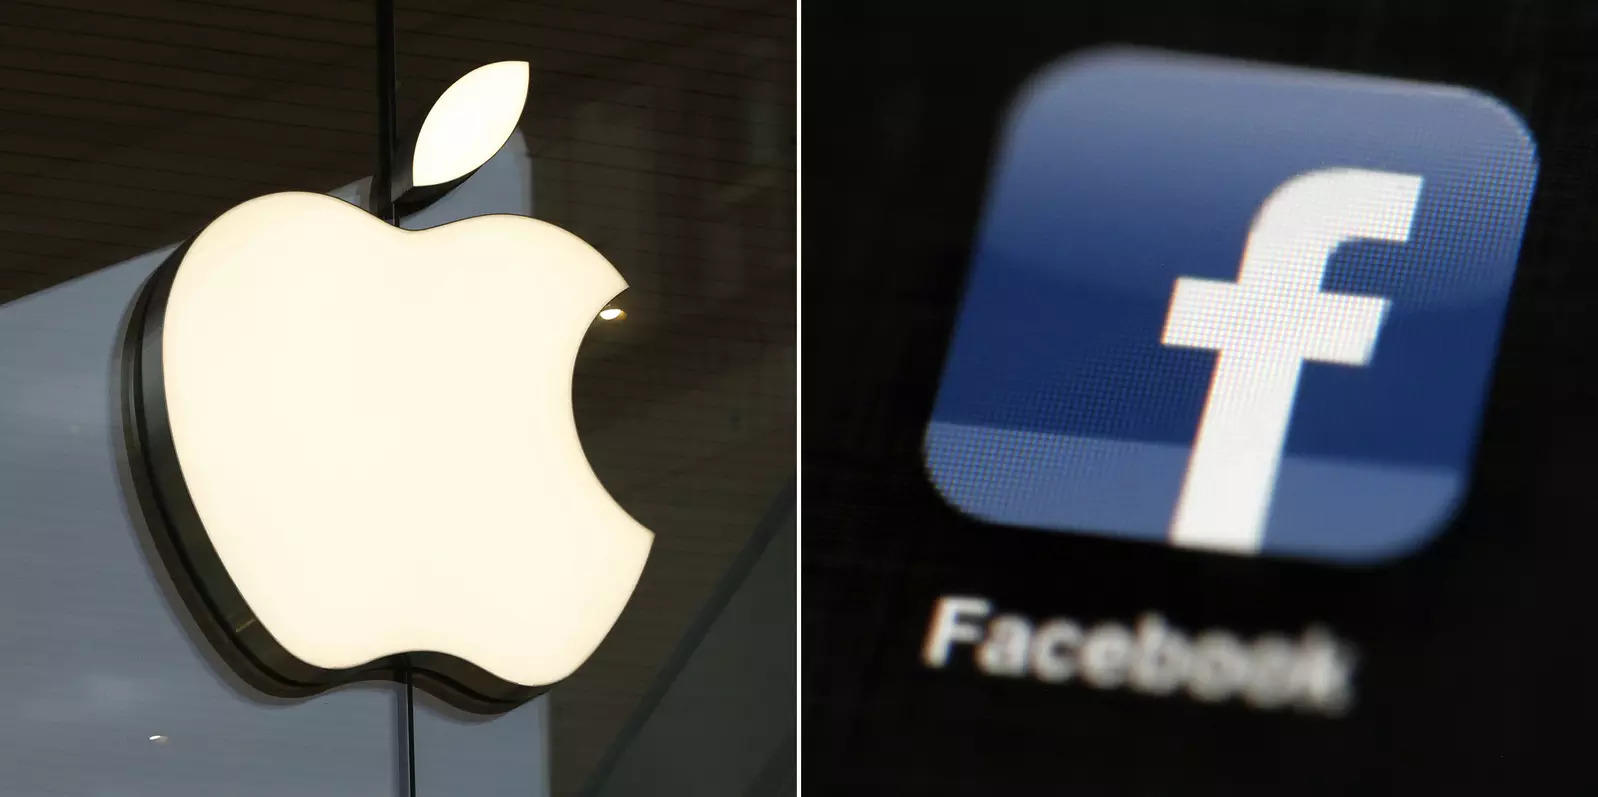 facebook: Facebook tung ra thông báo cho người dùng iPhone về quảng cáo được cá nhân hóa – Tin tức mới nhất